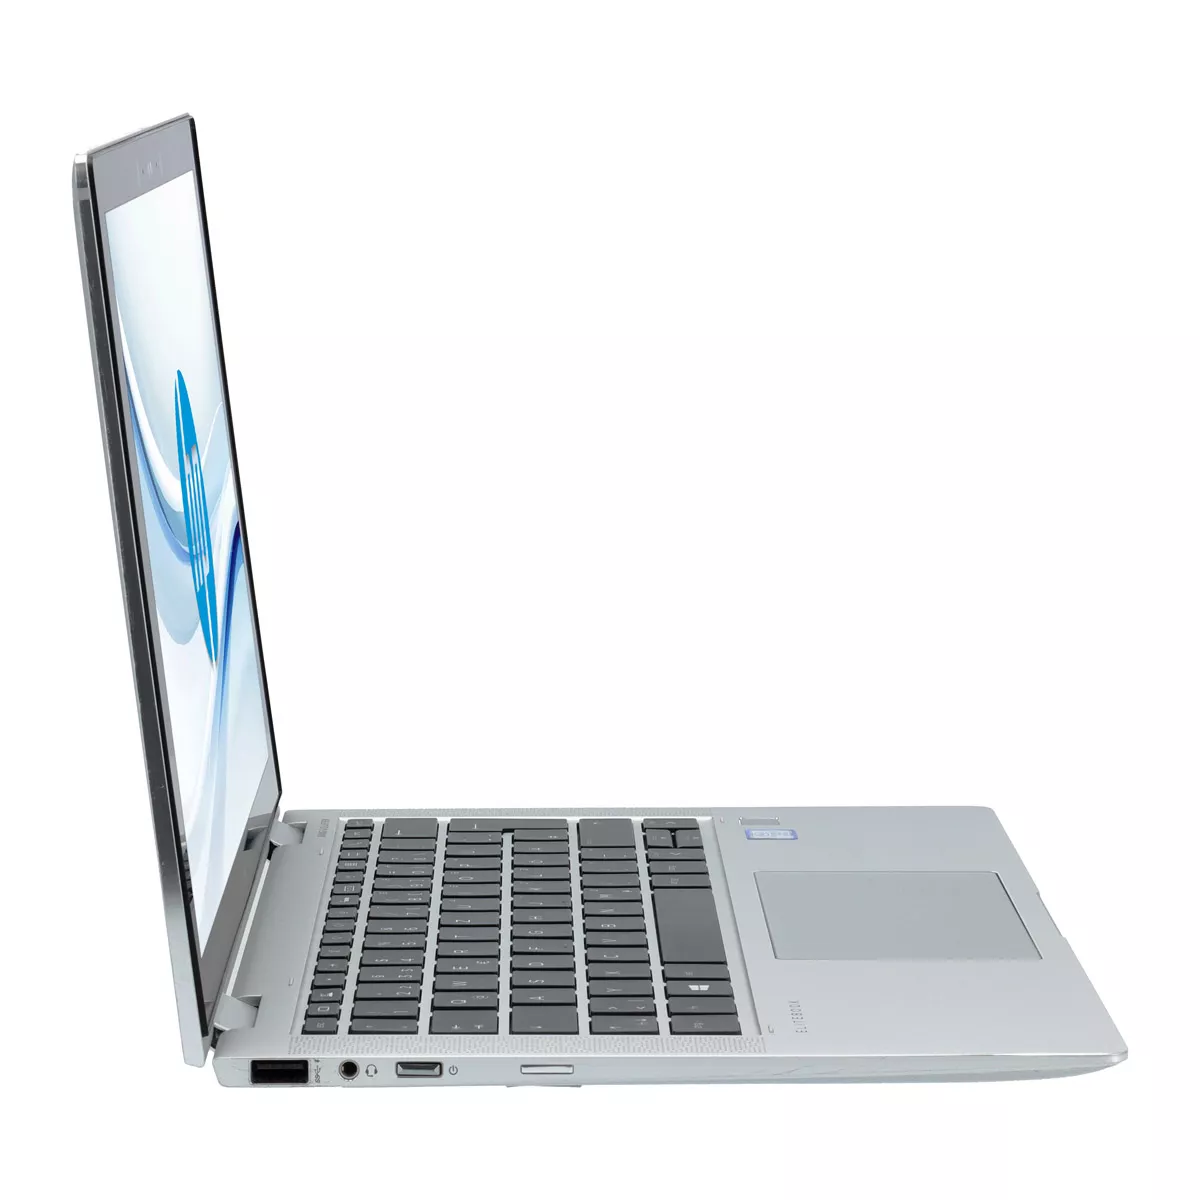 HP EliteBook x360 1030 G3 Core i7 8650U 16 GB 500 GB M.2 nVME SSD Touch Webcam A